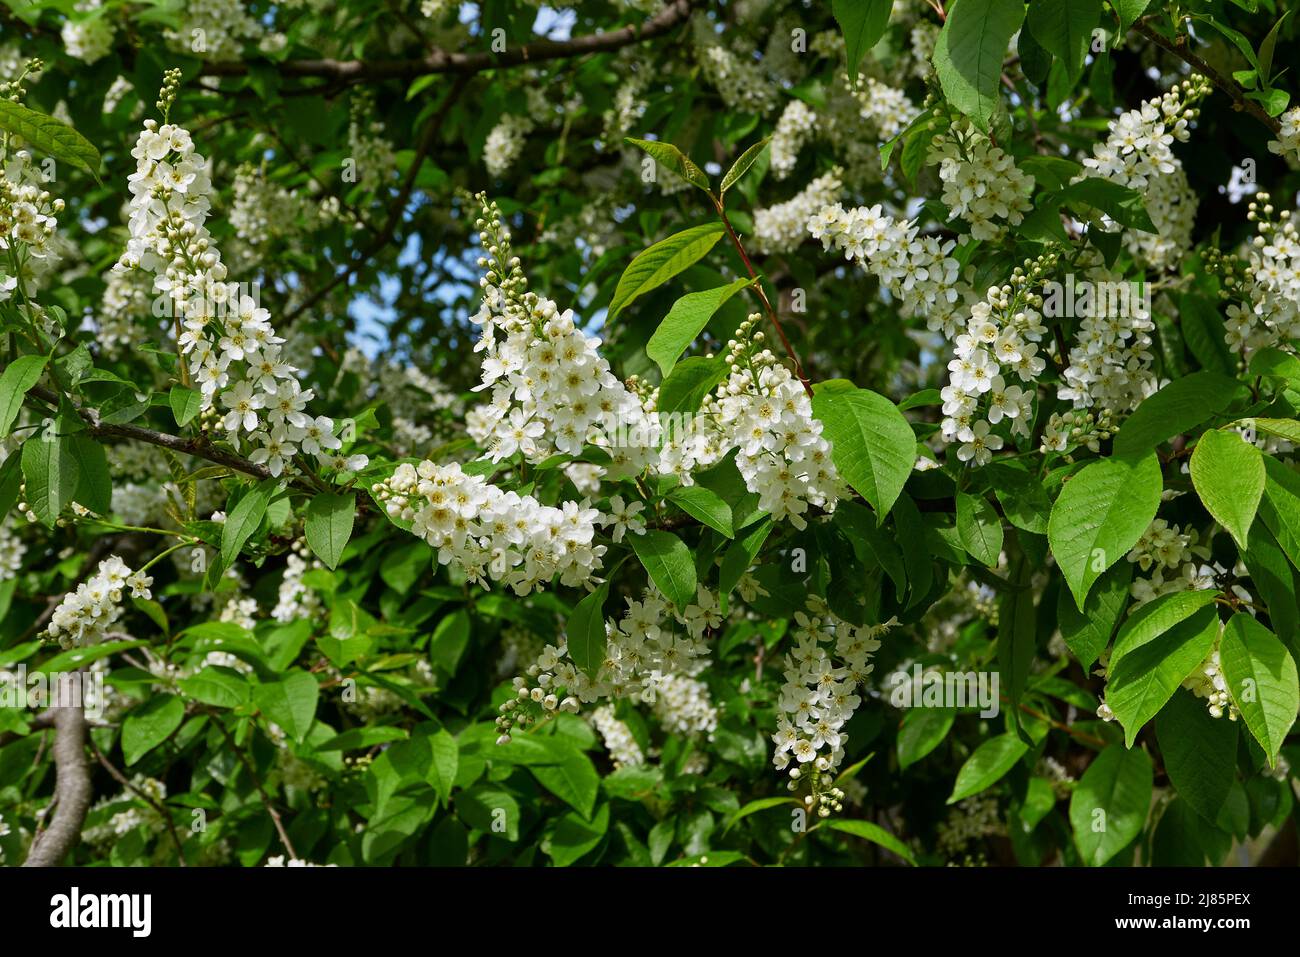 Prunus padus white blossom Stock Photo - Alamy